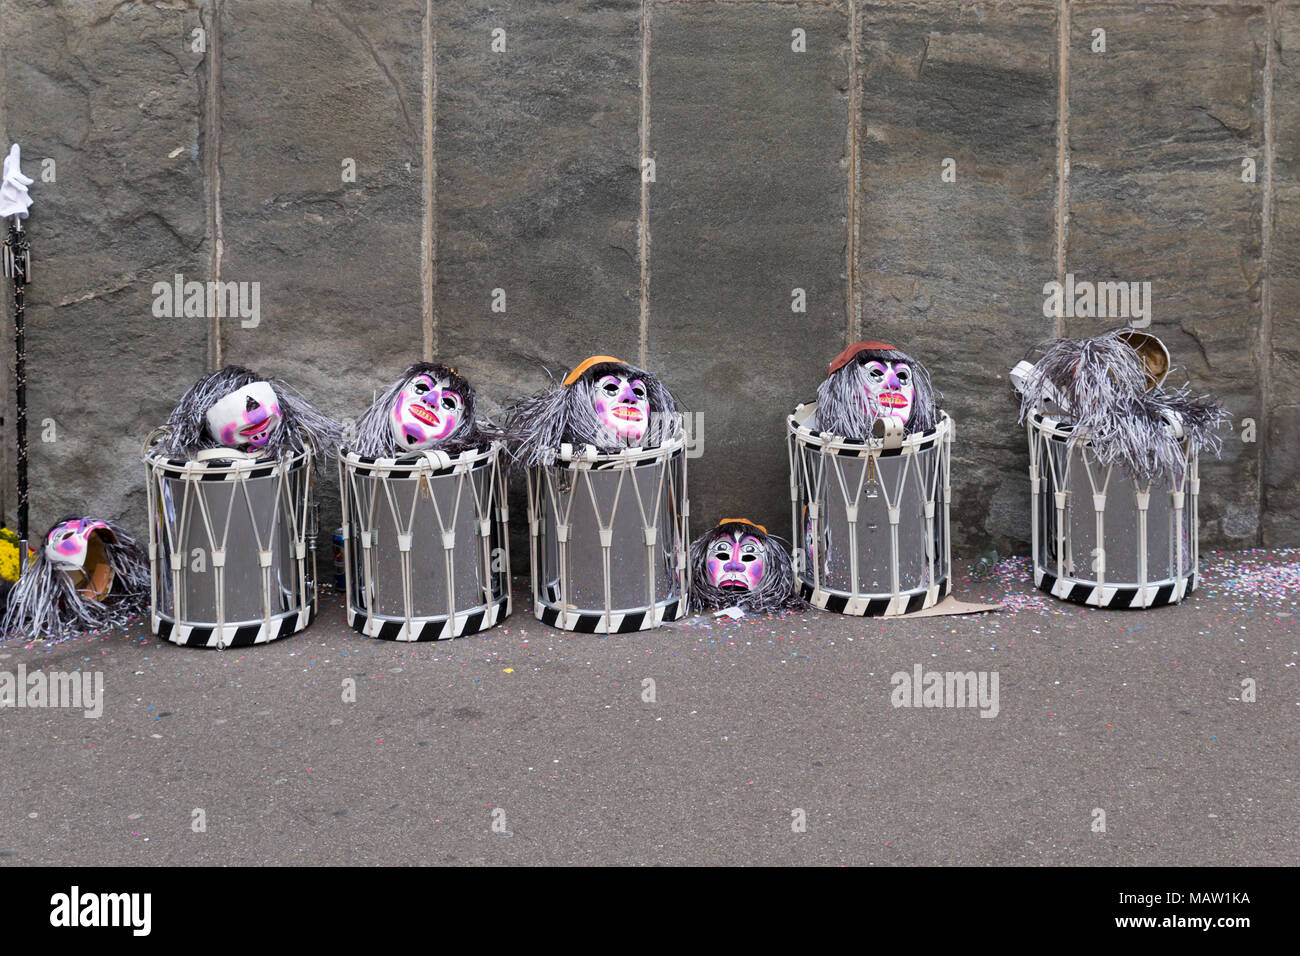 Il Carnevale di Basilea. Spiegelgasse, Basilea, Svizzera - Febbraio 21st, 2018. Linea di rullanti e maschere di fronte a un muro grigio Foto Stock